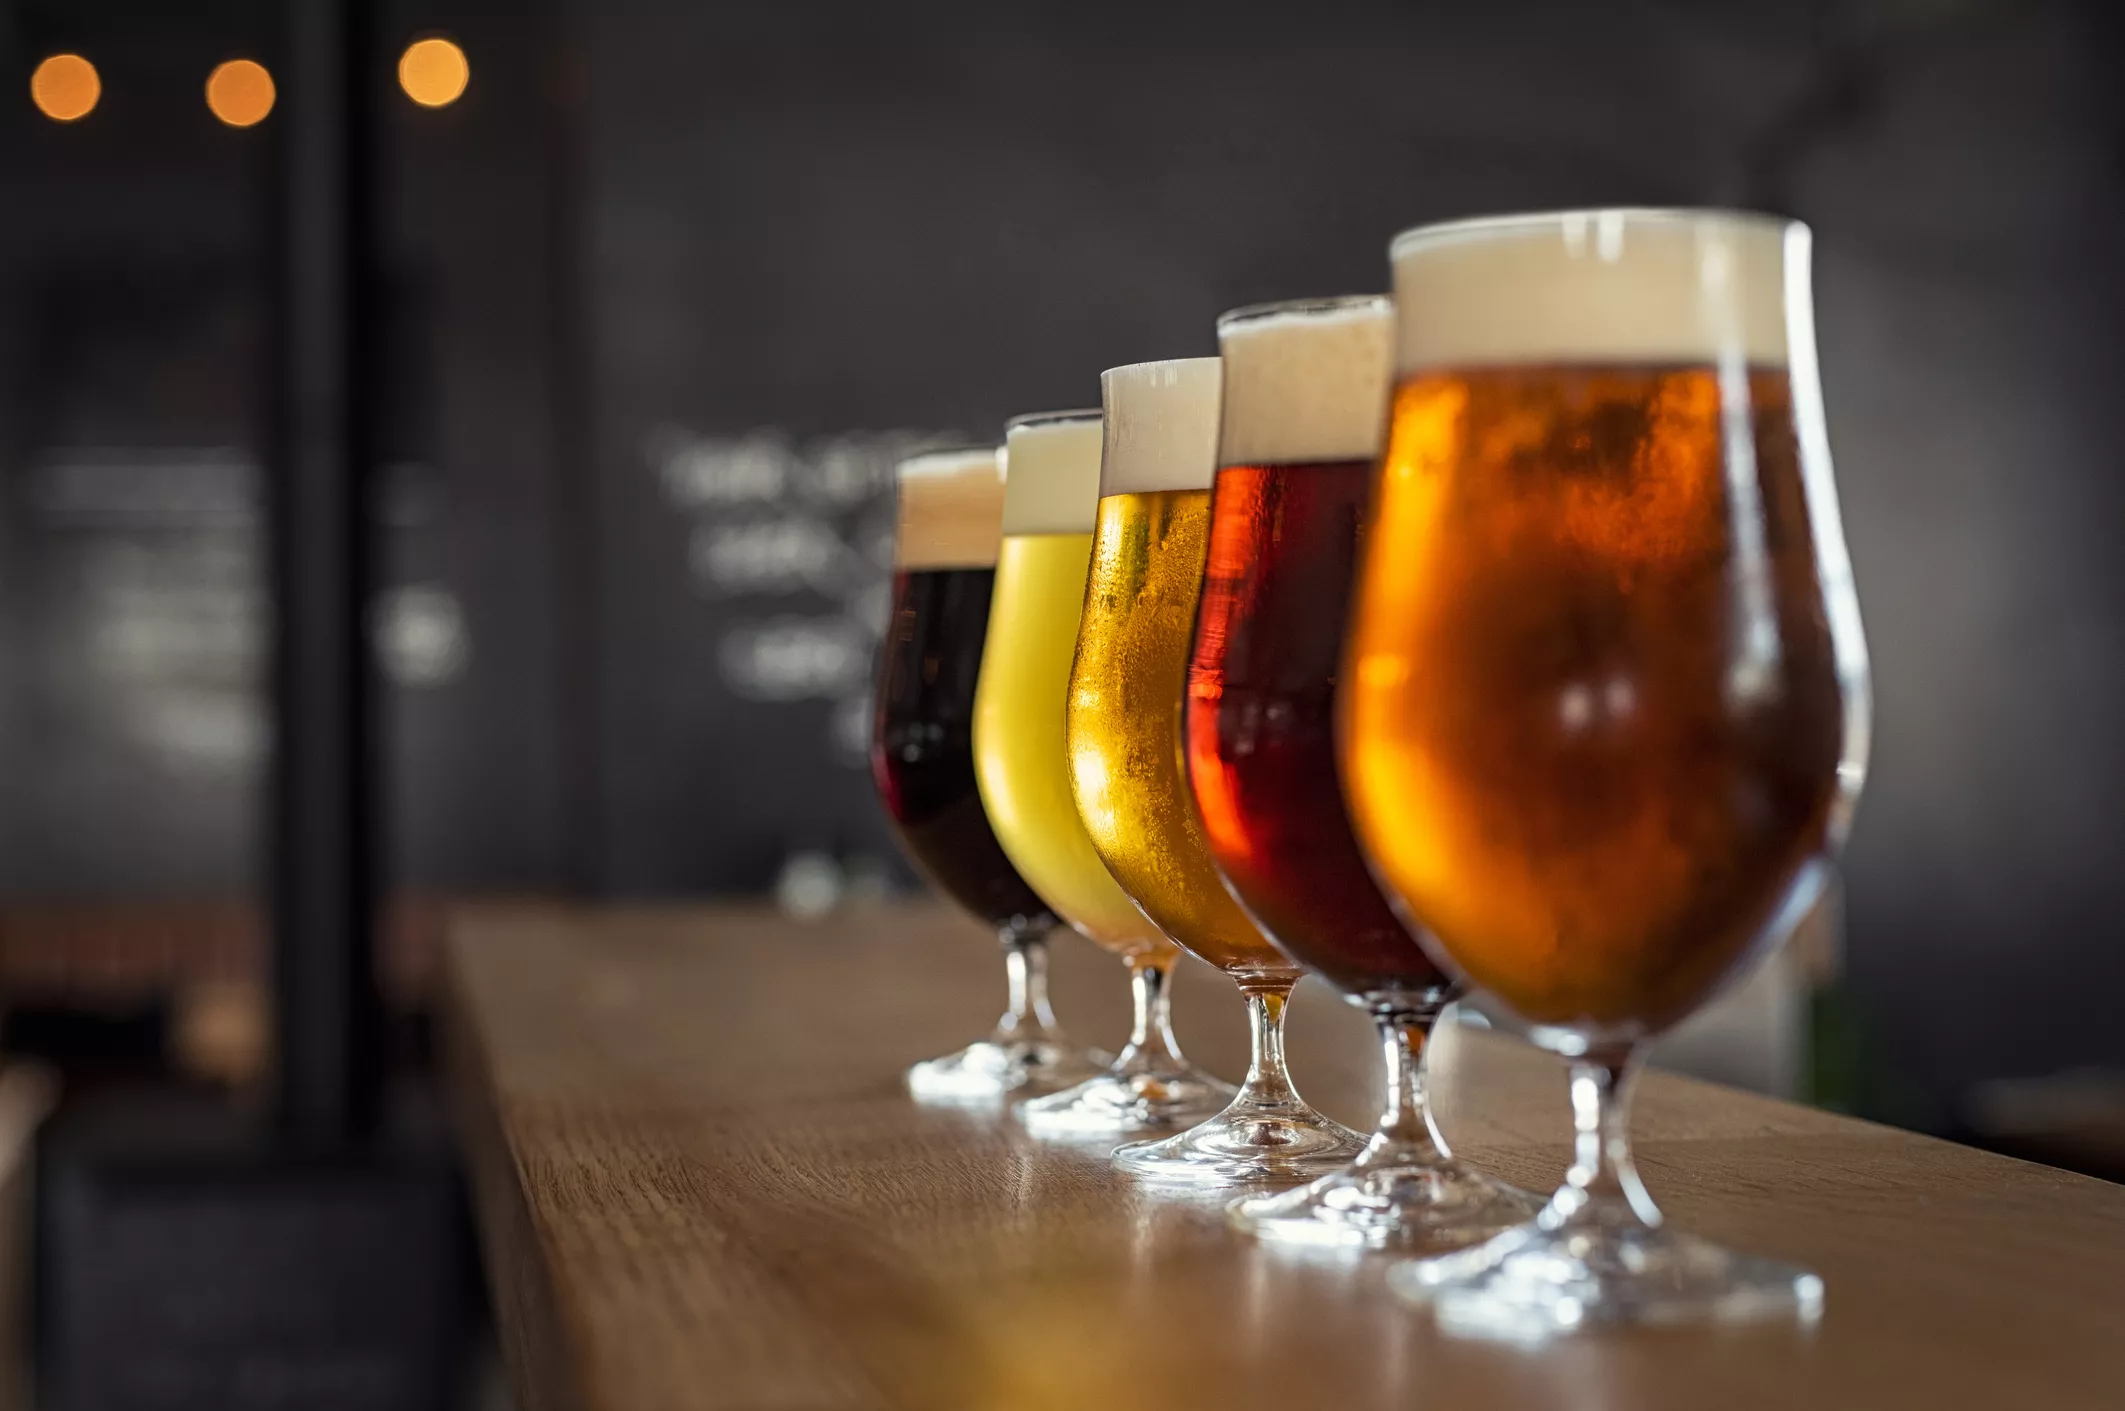 A l'època medieval, la cervesa esdevindria objecte de negoci i control per part del món laic i la noblesa